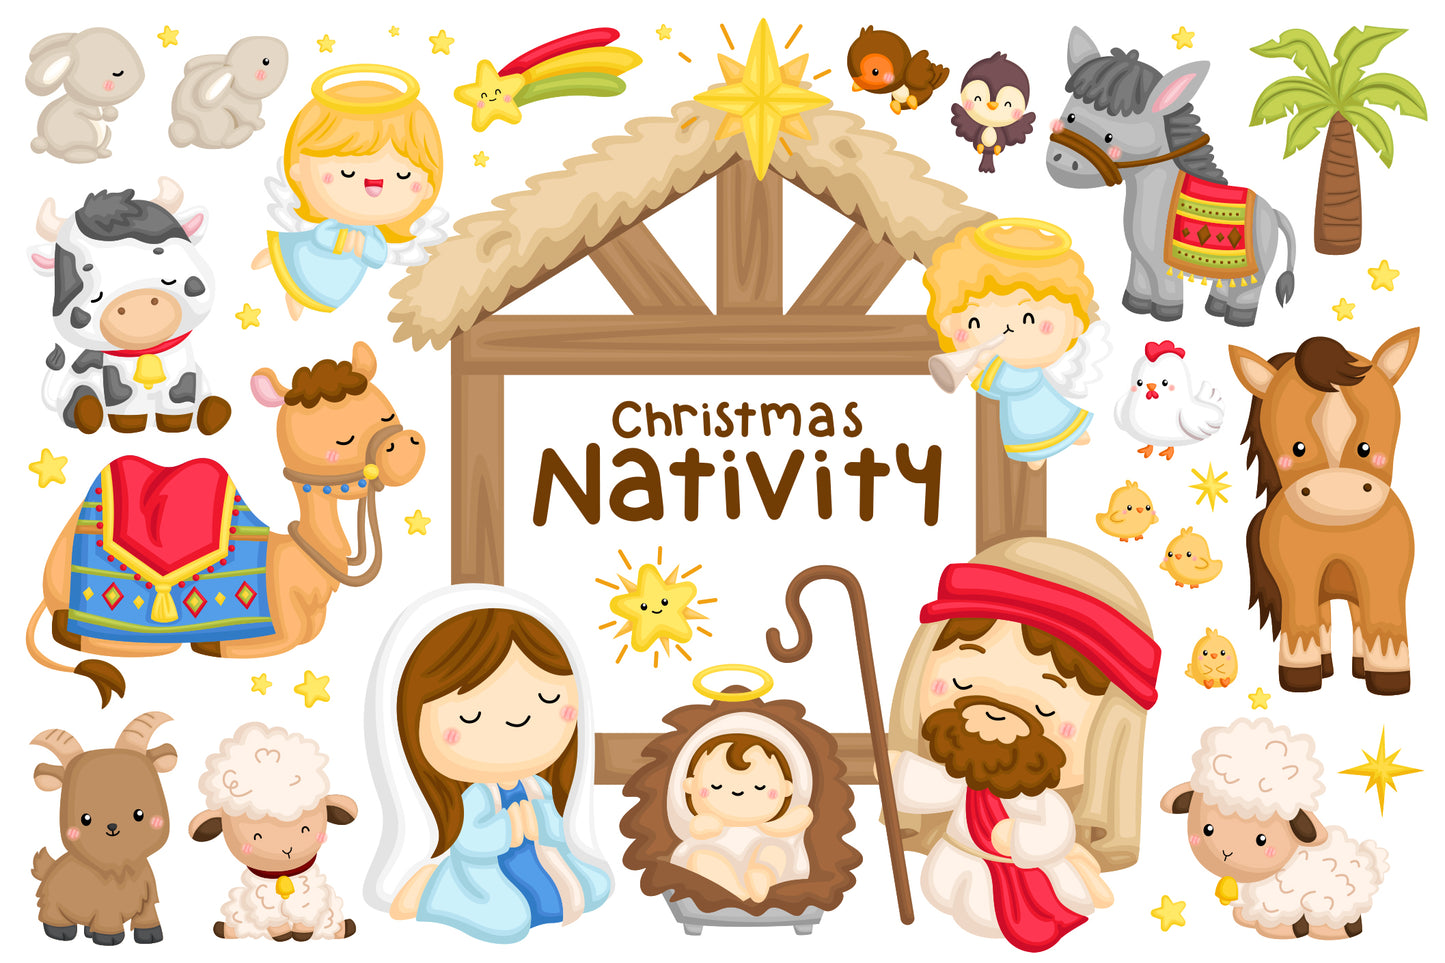 Christmas Nativity Clipart - Cute Animal Clip Art